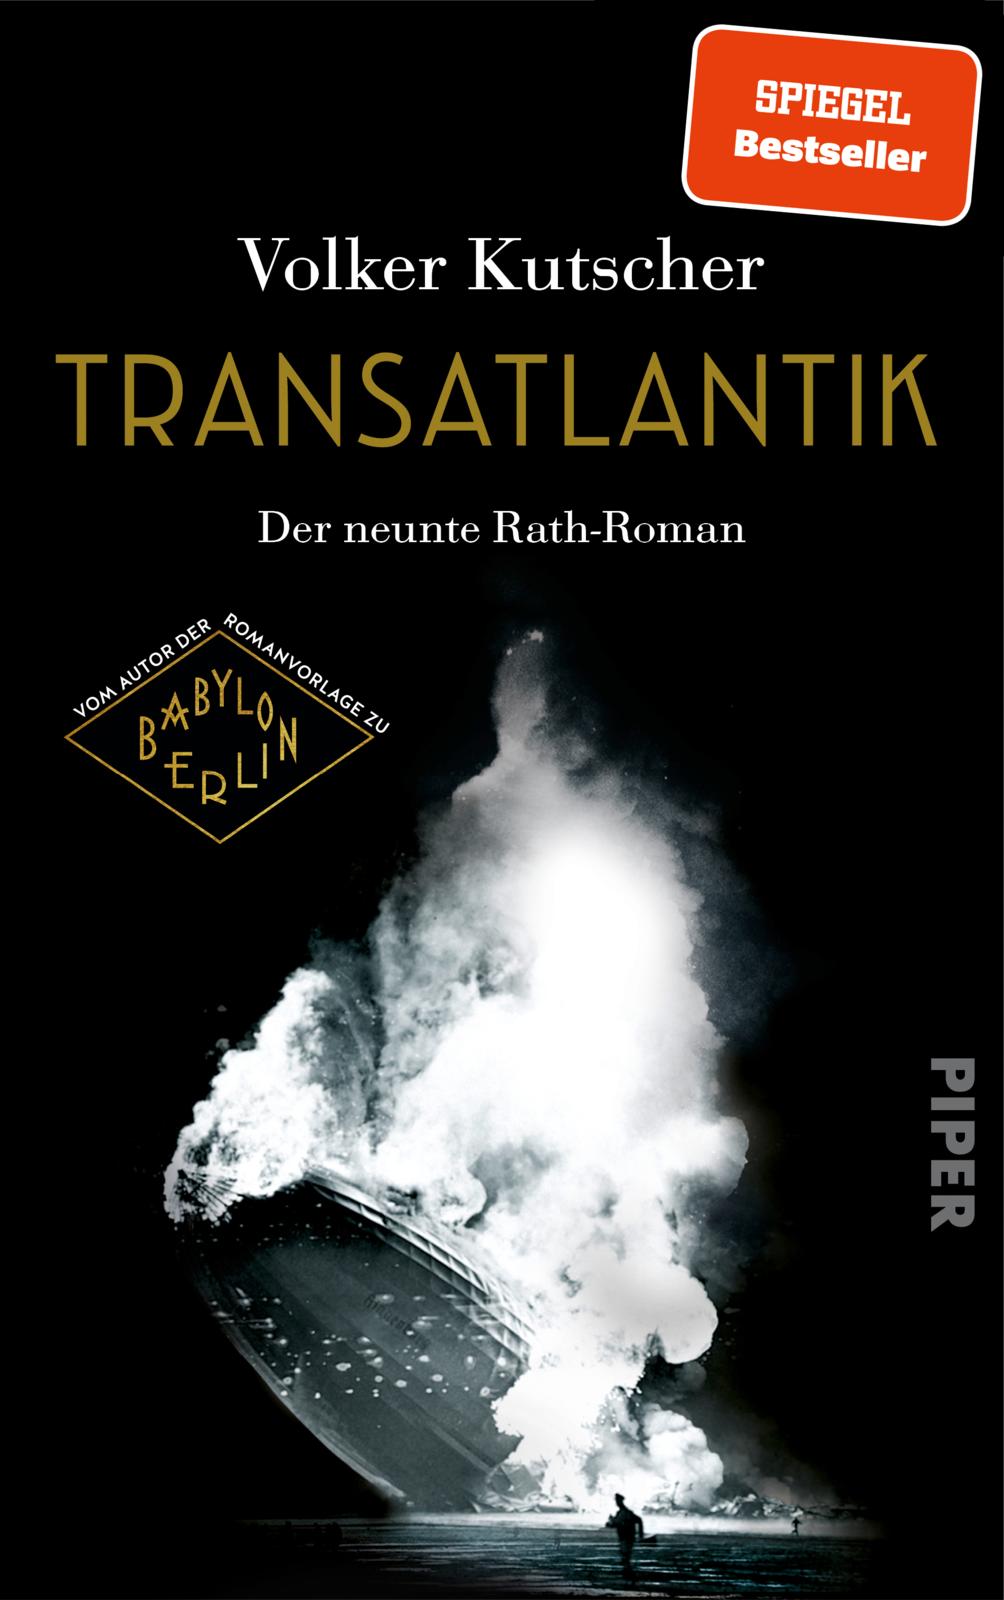 Volker Kutscher: Transatlantik (EBook, German language)